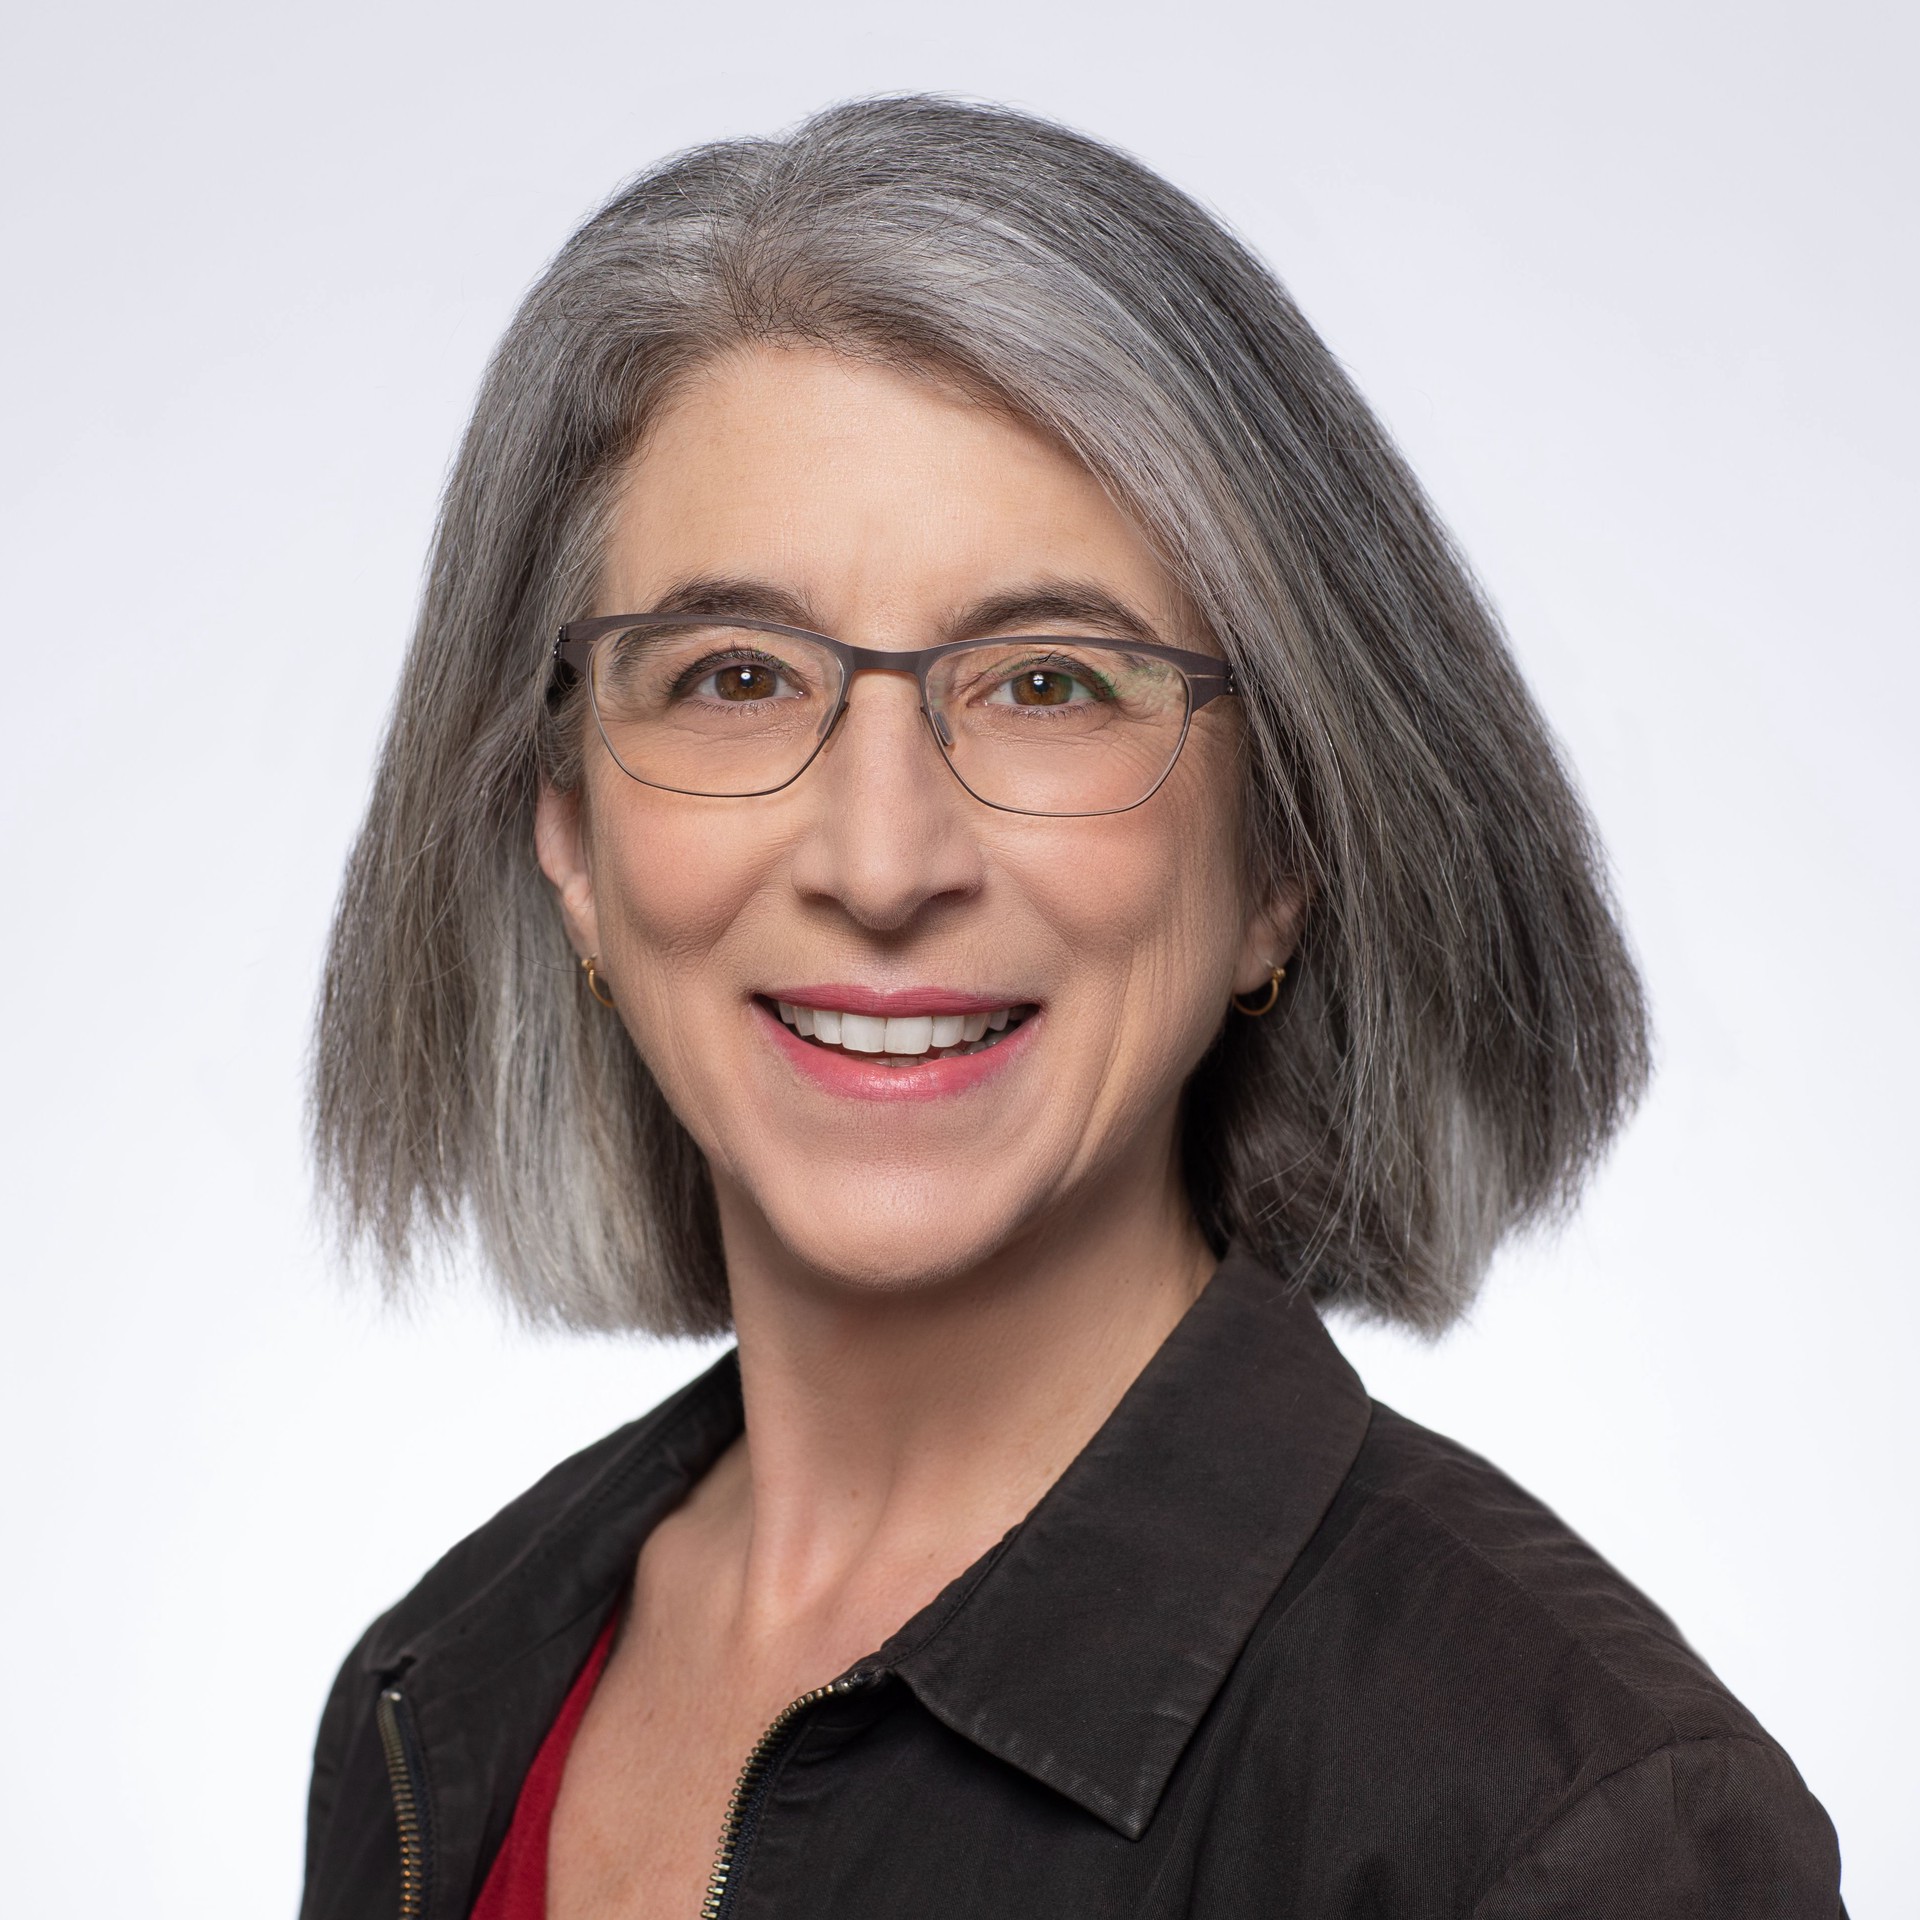 Cindy Cohn, Executive Director